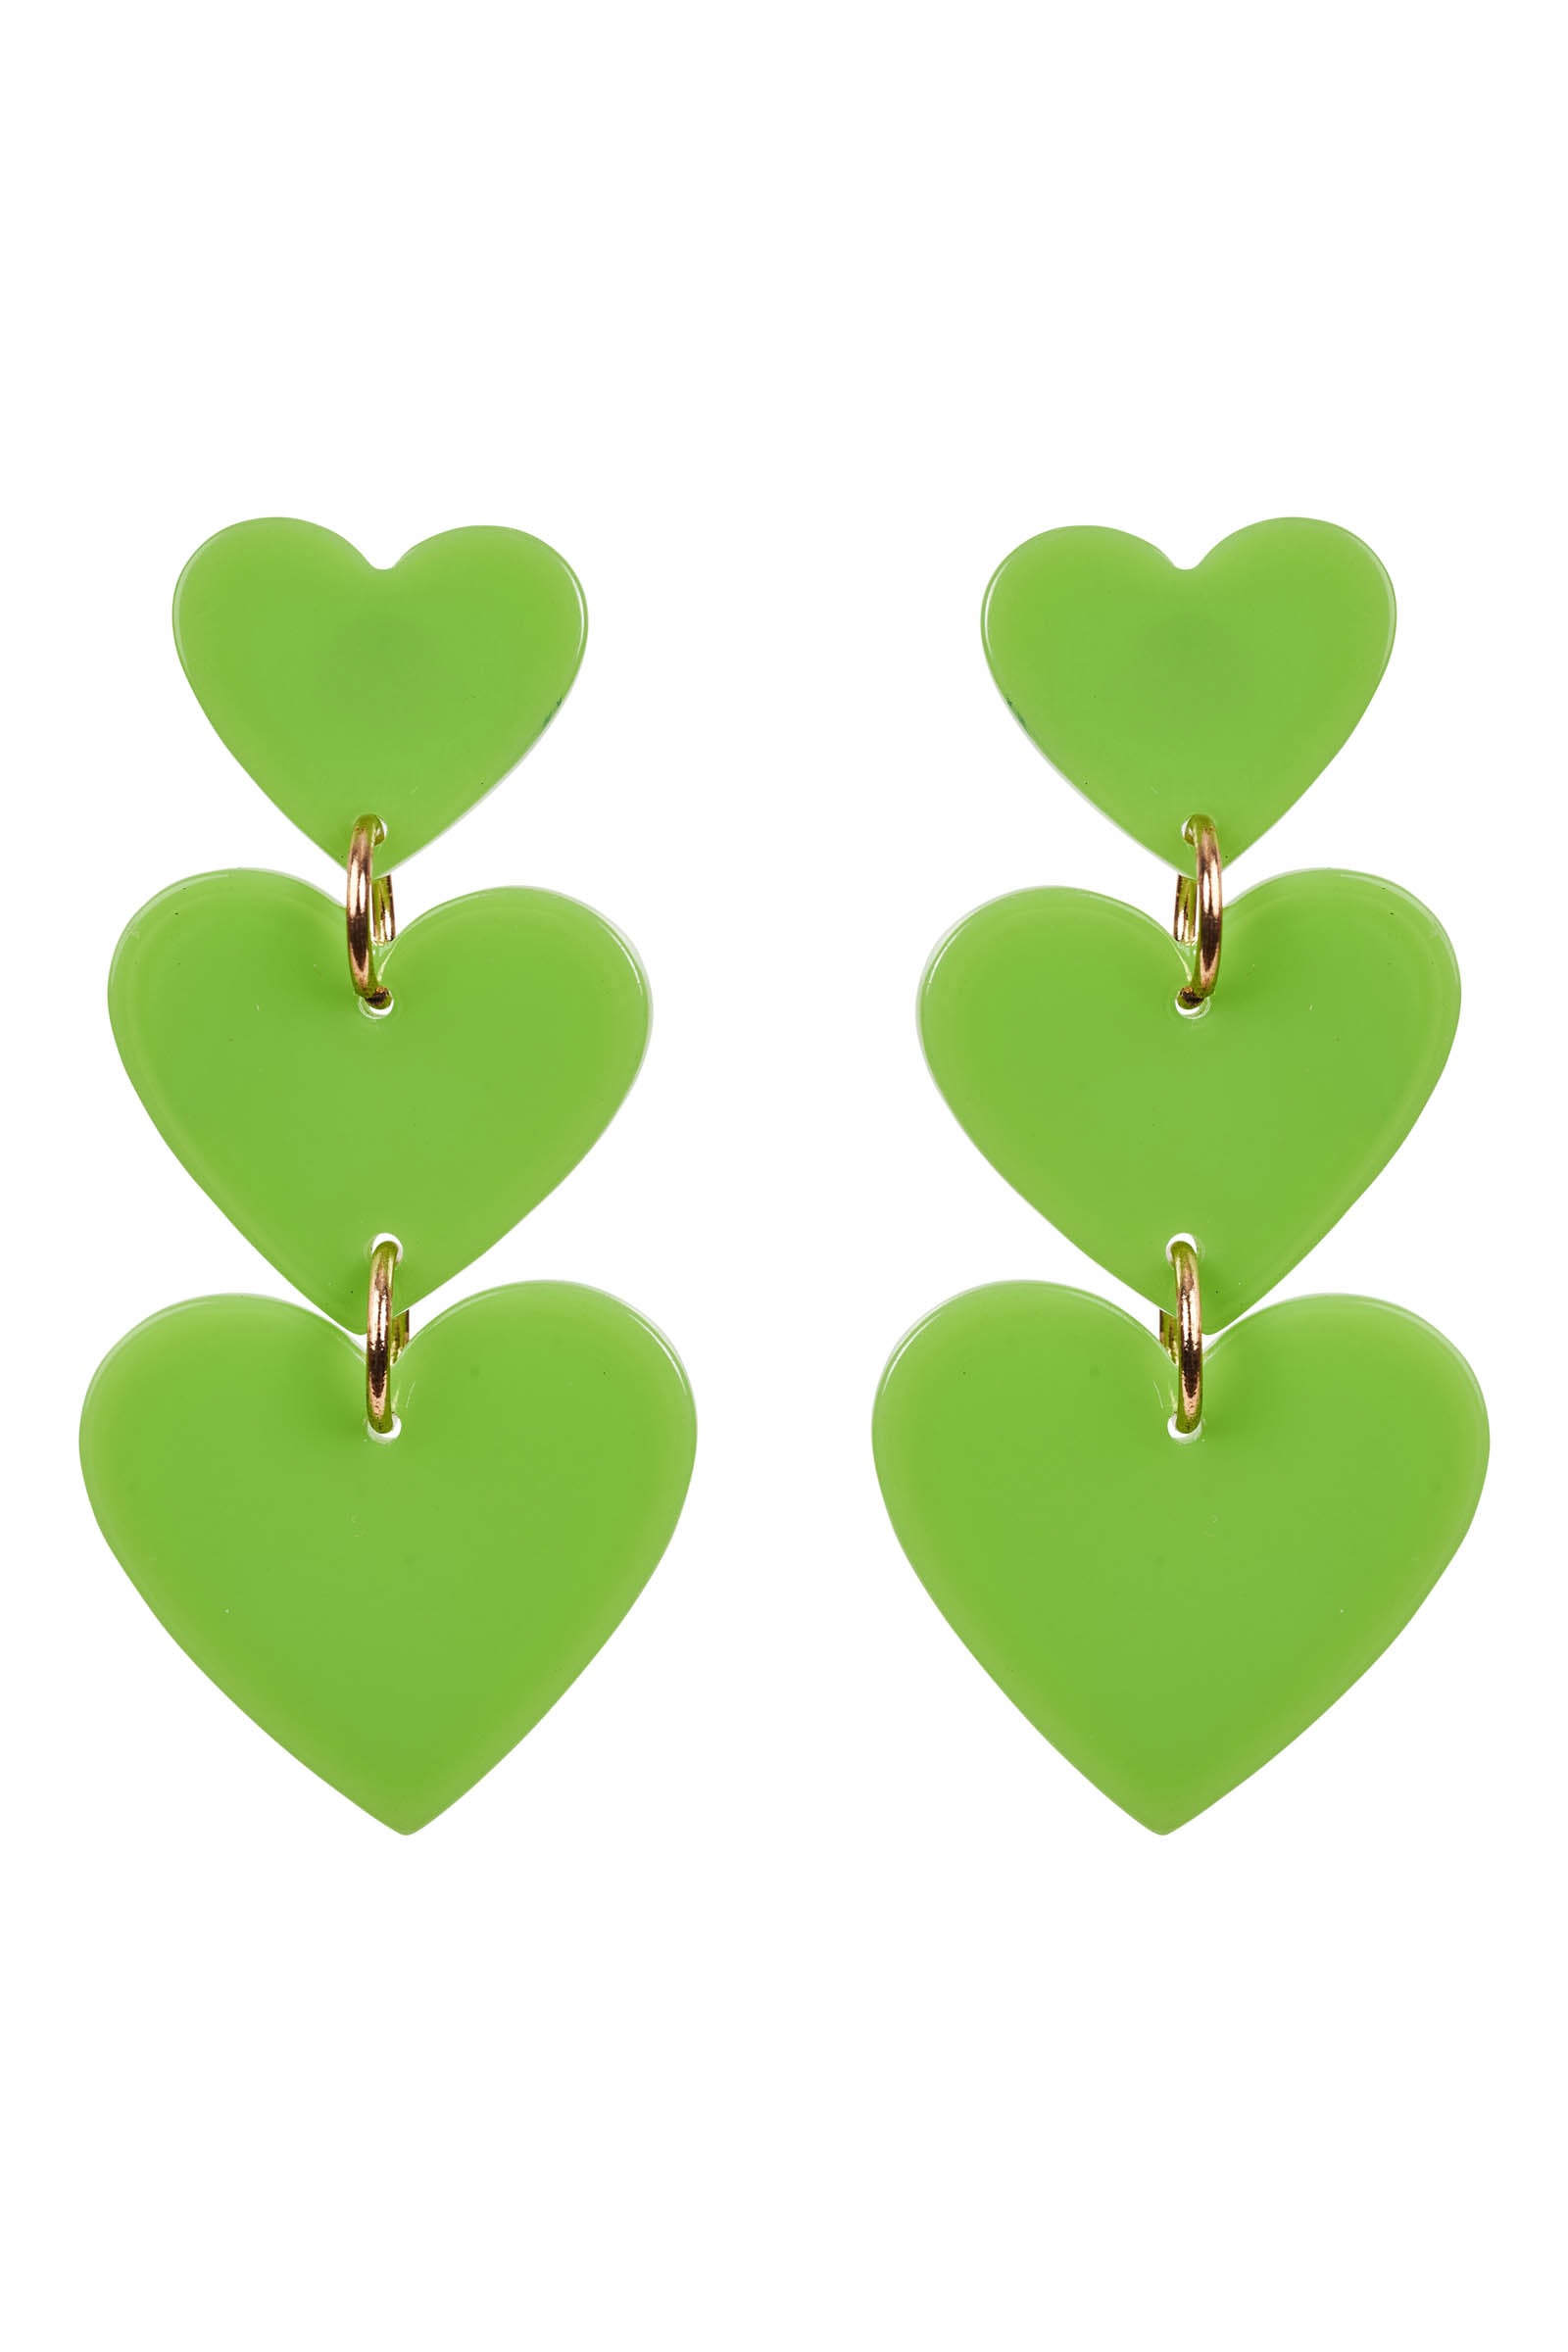 La Vie Heart Earring - Kiwi - eb&ive Earring